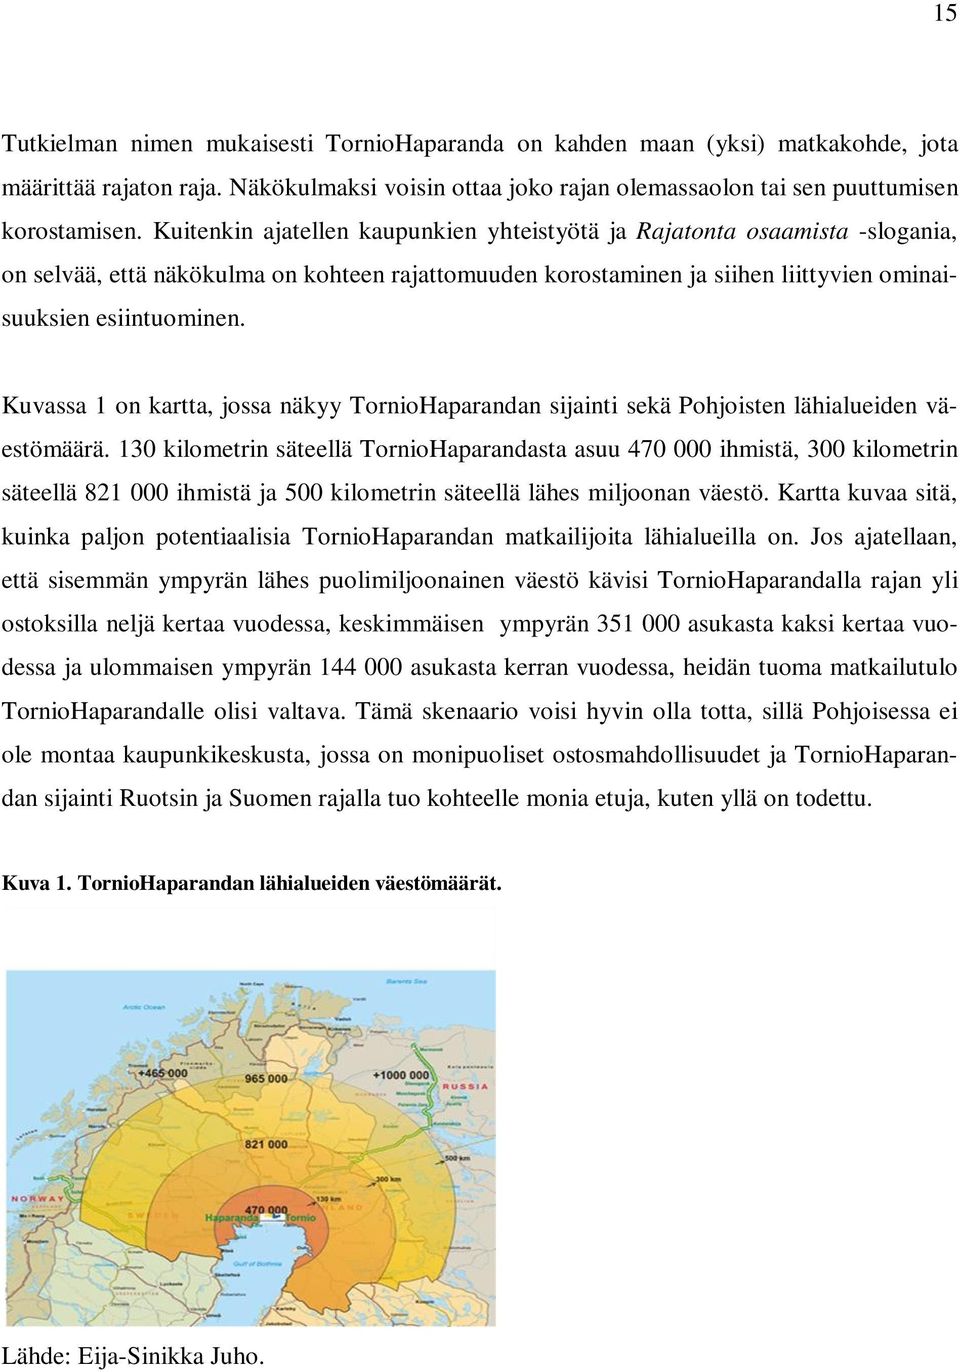 Kuvassa 1 on kartta, jossa näkyy TornioHaparandan sijainti sekä Pohjoisten lähialueiden väestömäärä.